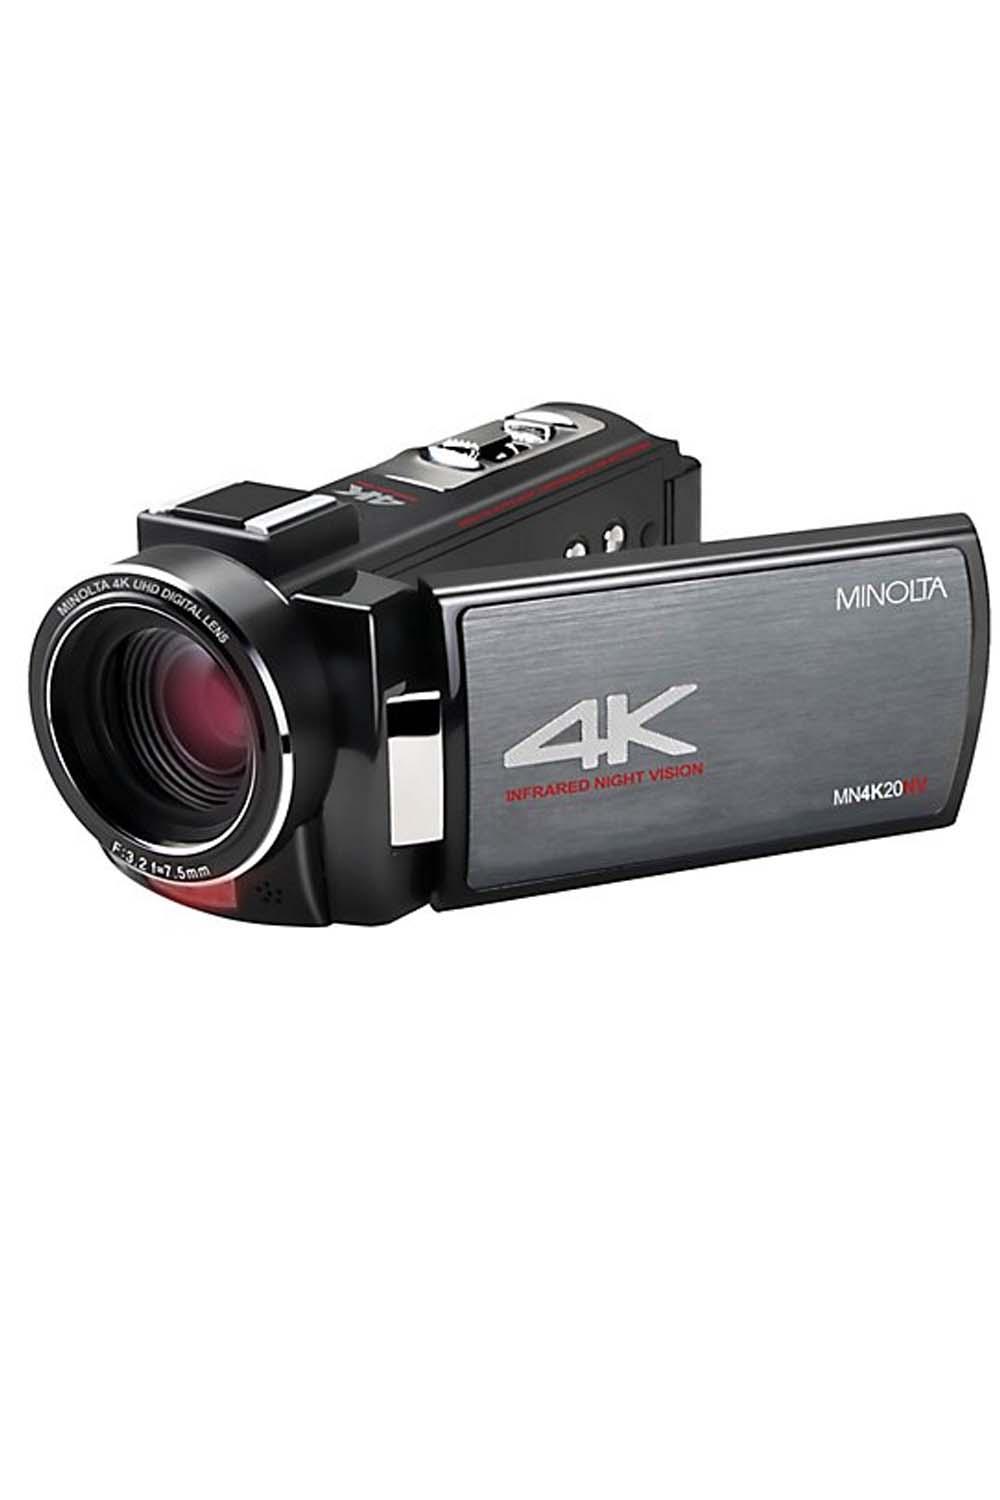 Minolta Mn4k20nv 4K Ultra HD IR Night Vision Camcorder